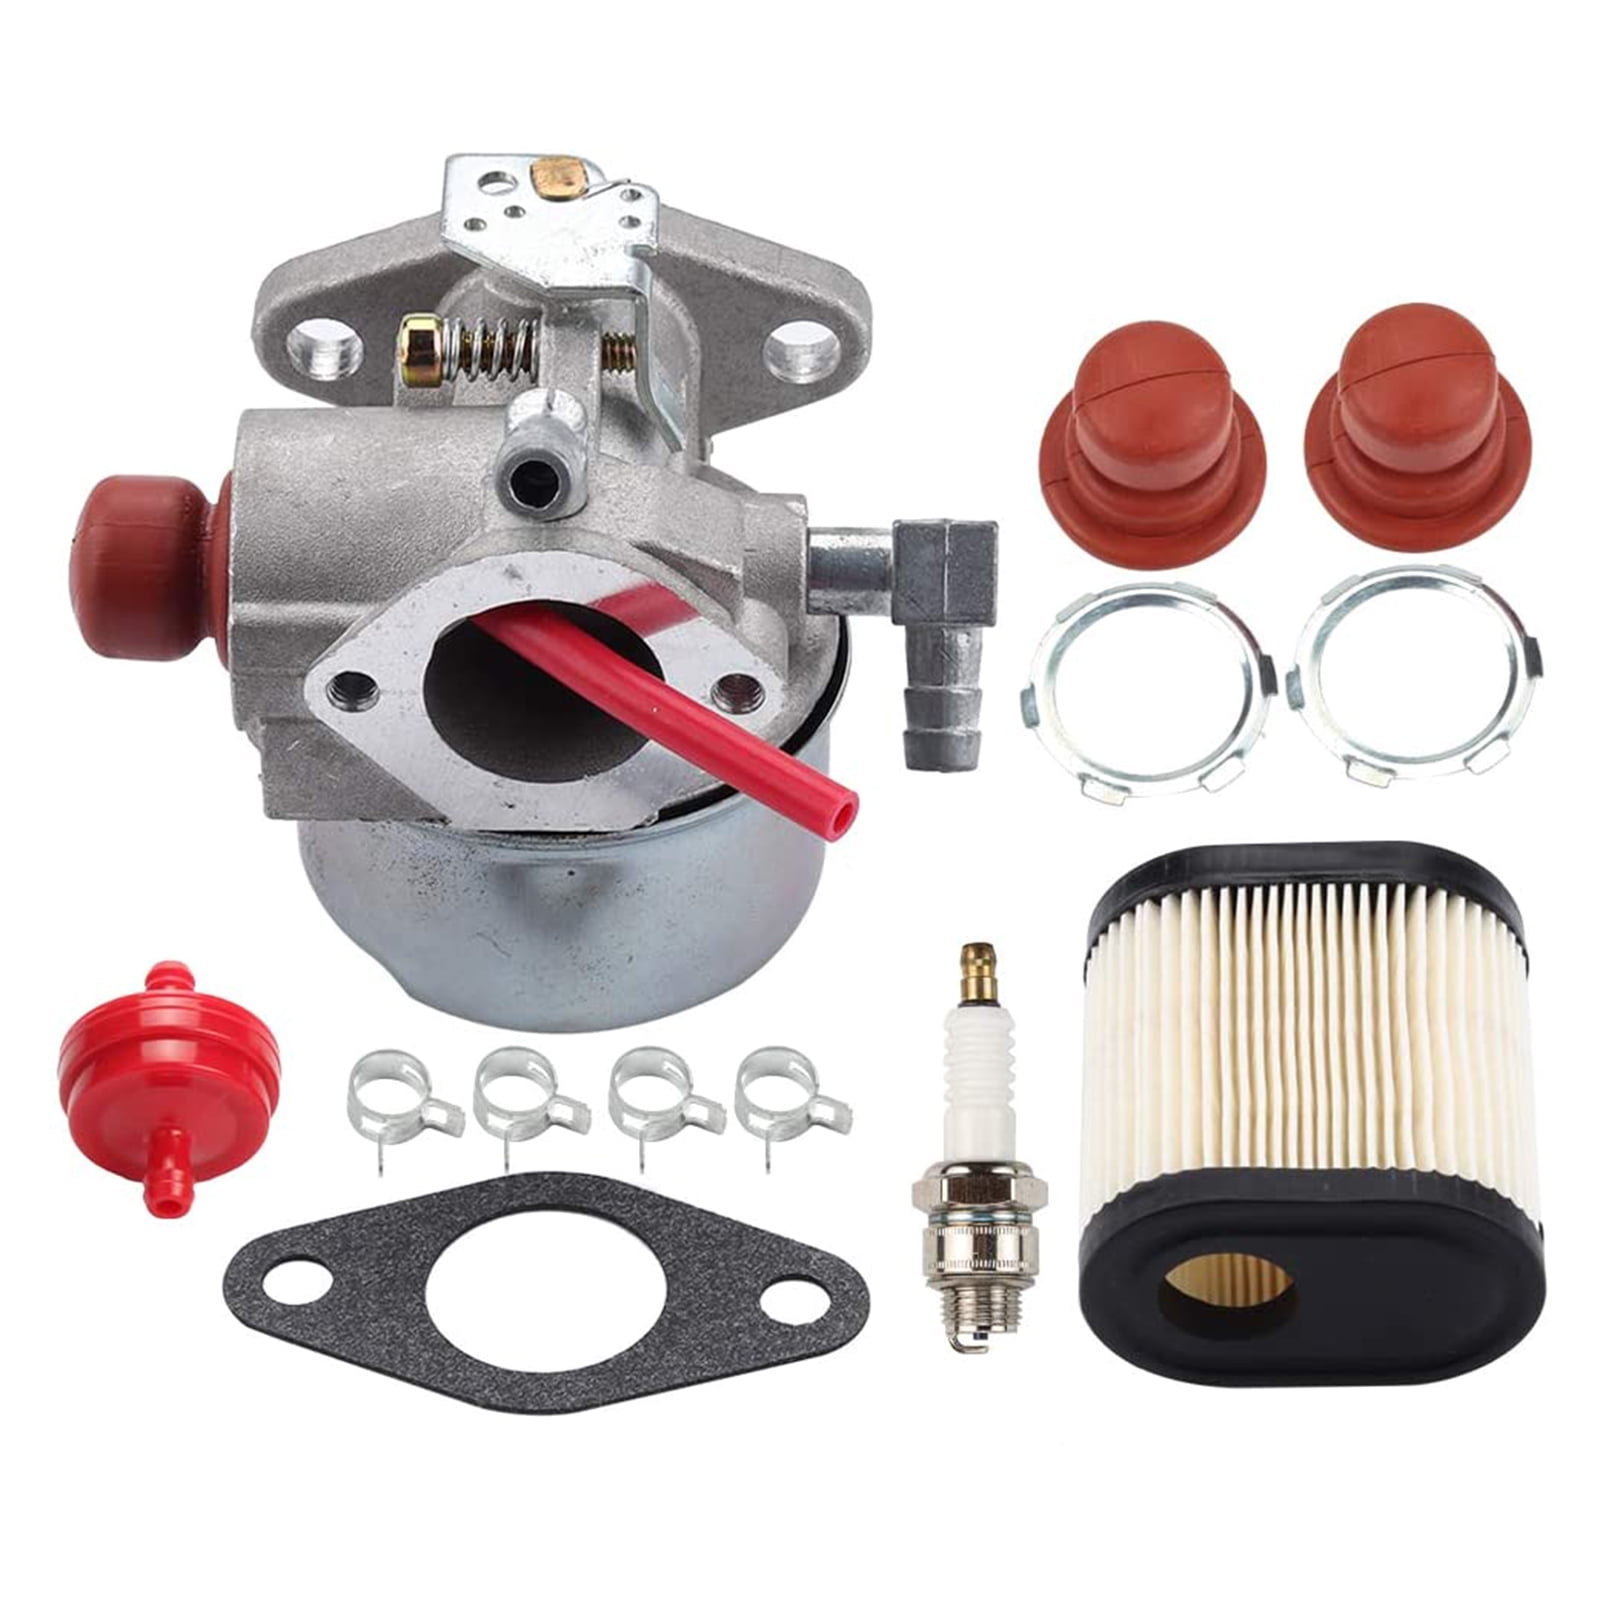 Air Filter Carburetor Fit For Tecumseh 640350 640303 640271 Sears Craftsman Mowe 